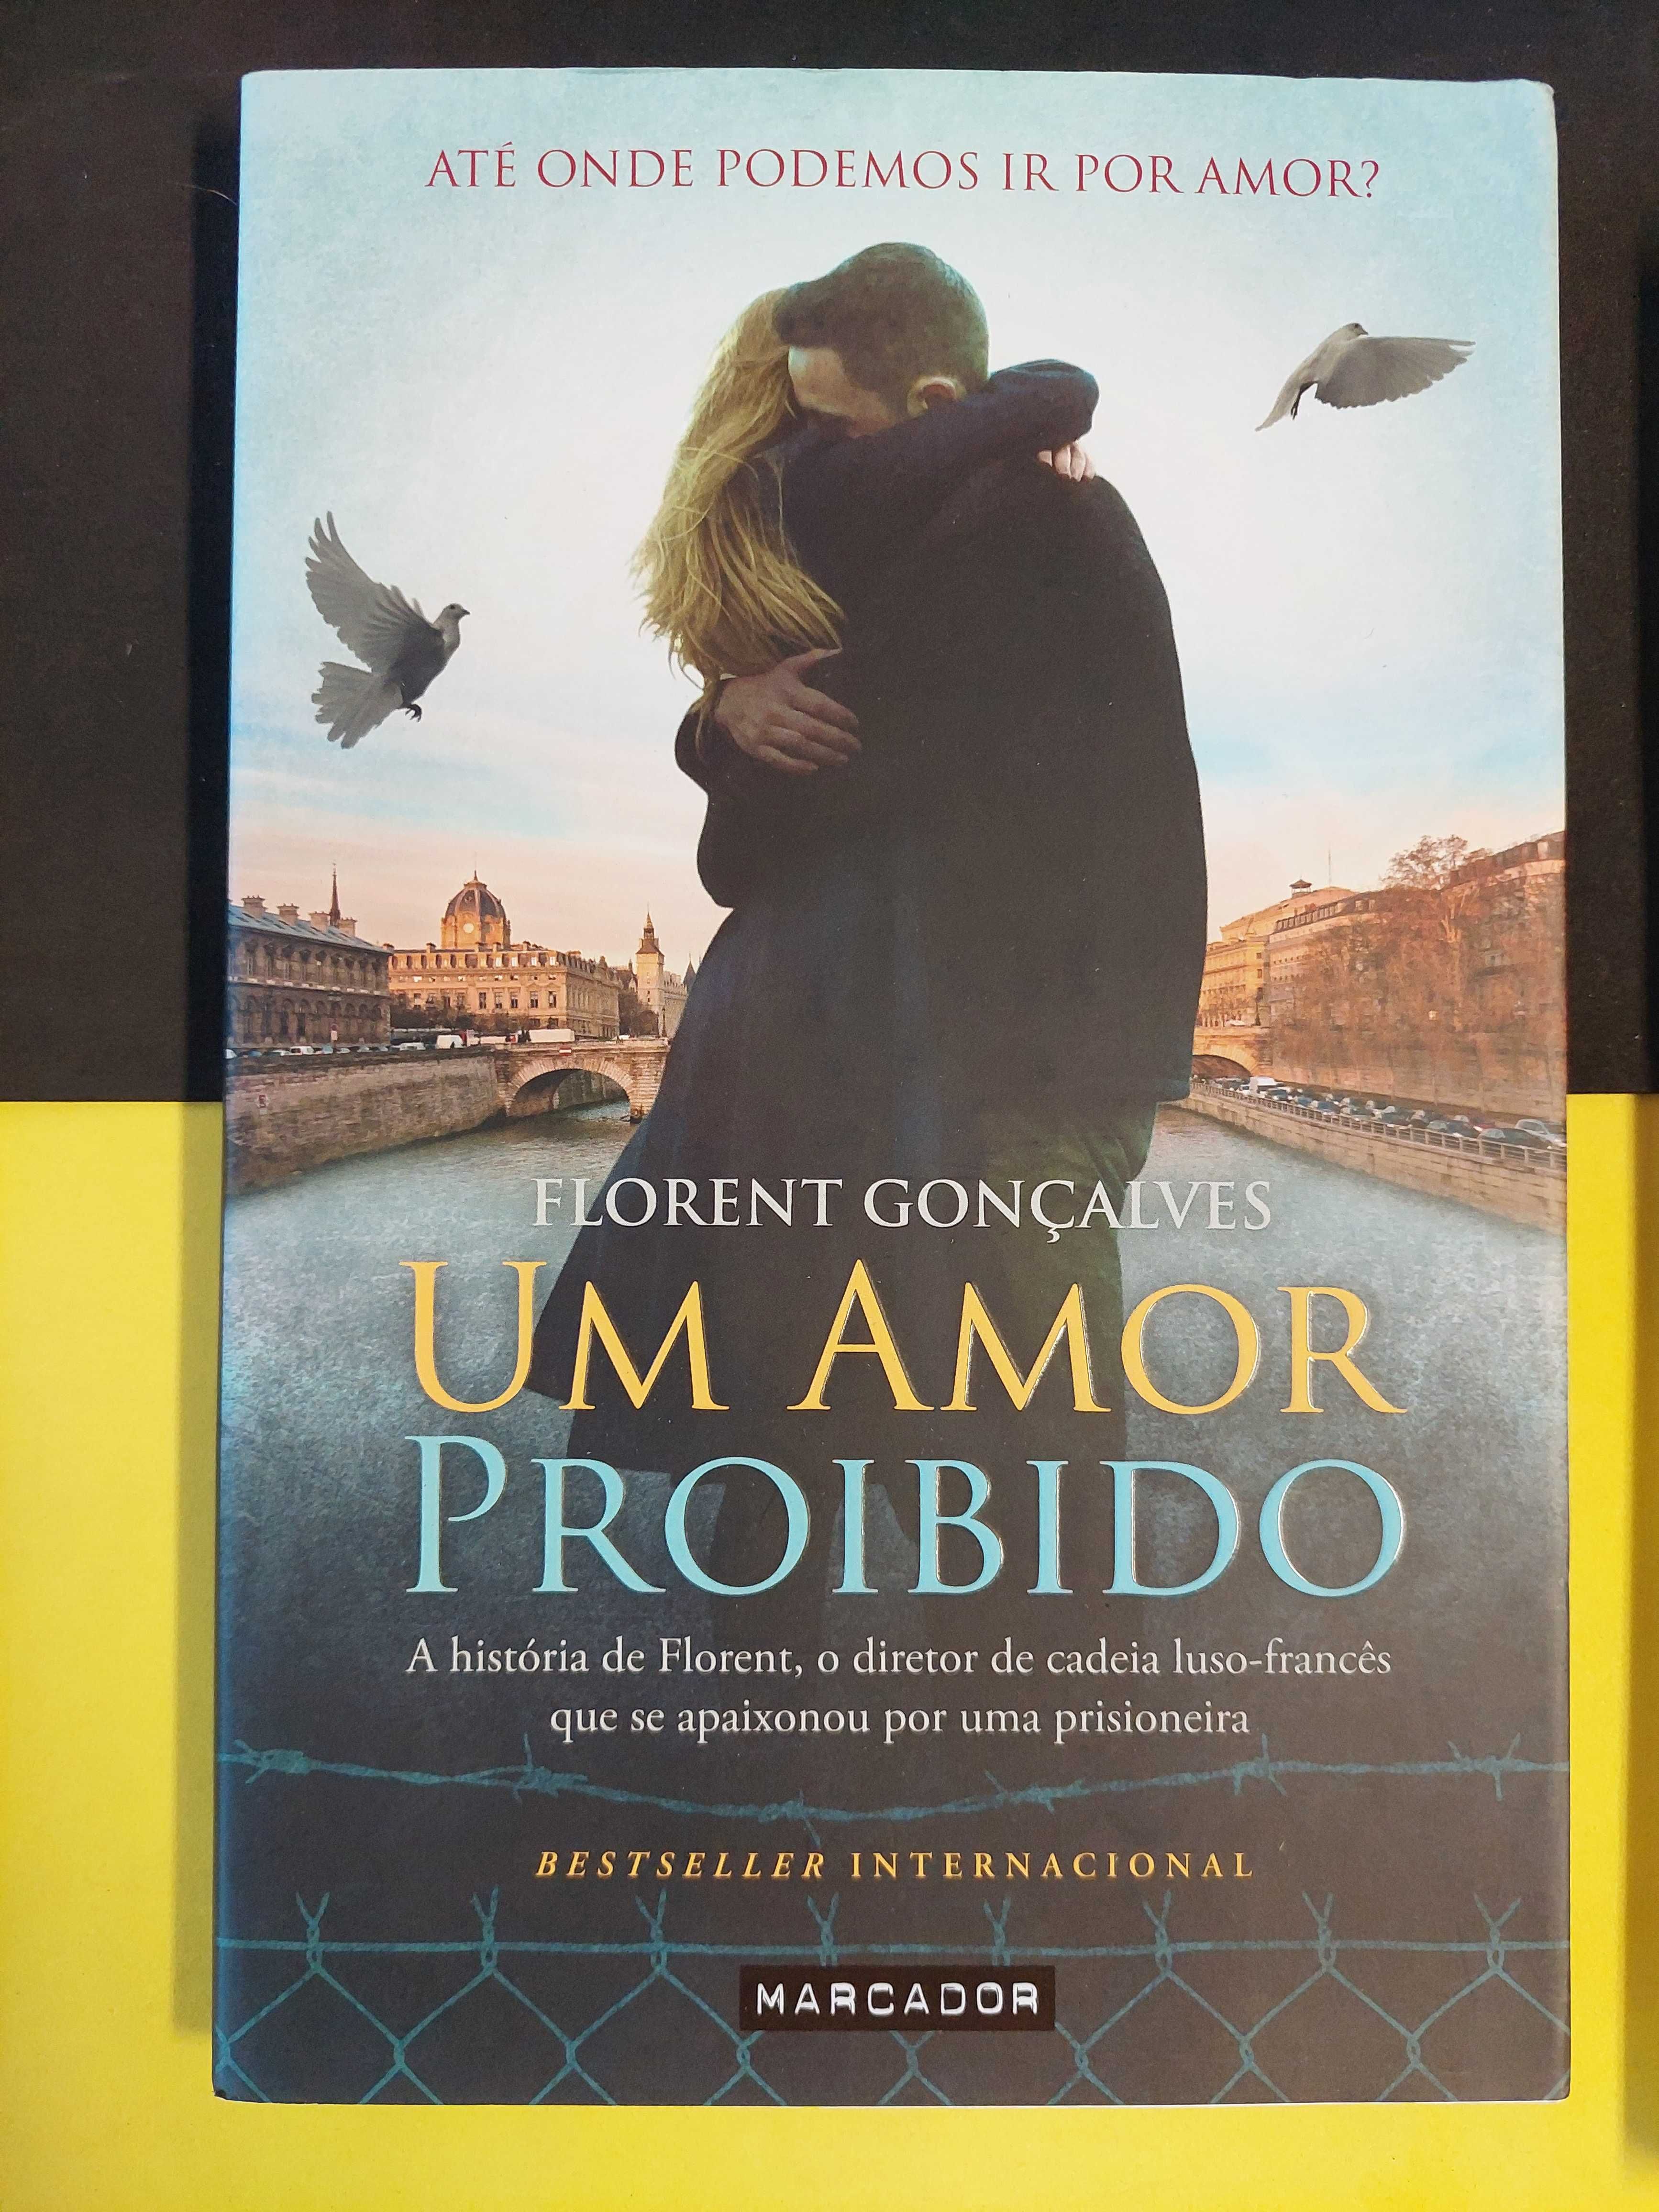 Florent Gonçalves - Um amor proibido